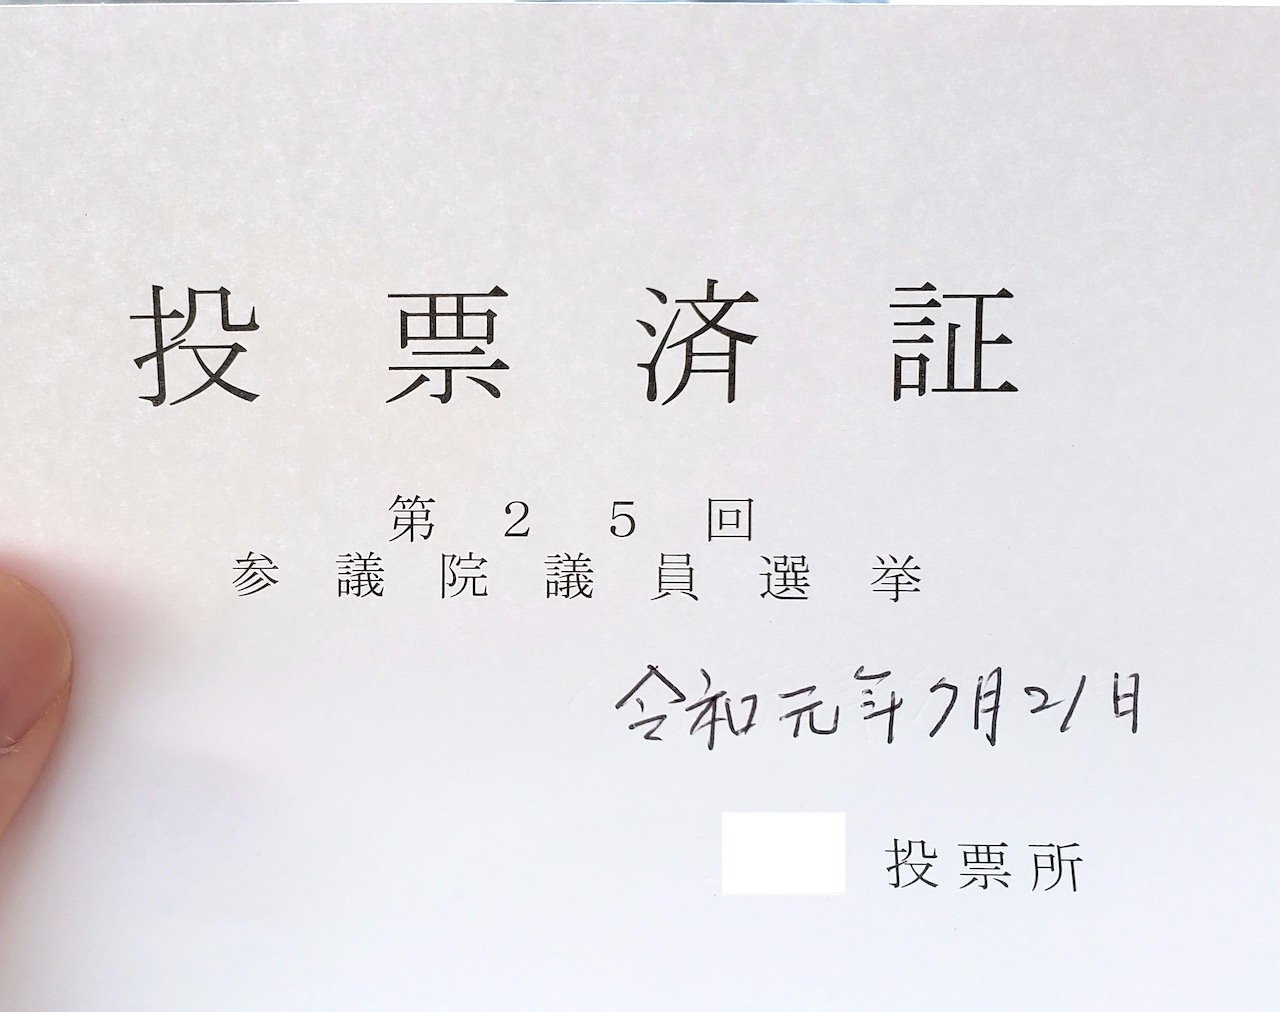 【参院選2019 選挙結果】東京選挙区・当選者と候補者20人それぞれの得票数